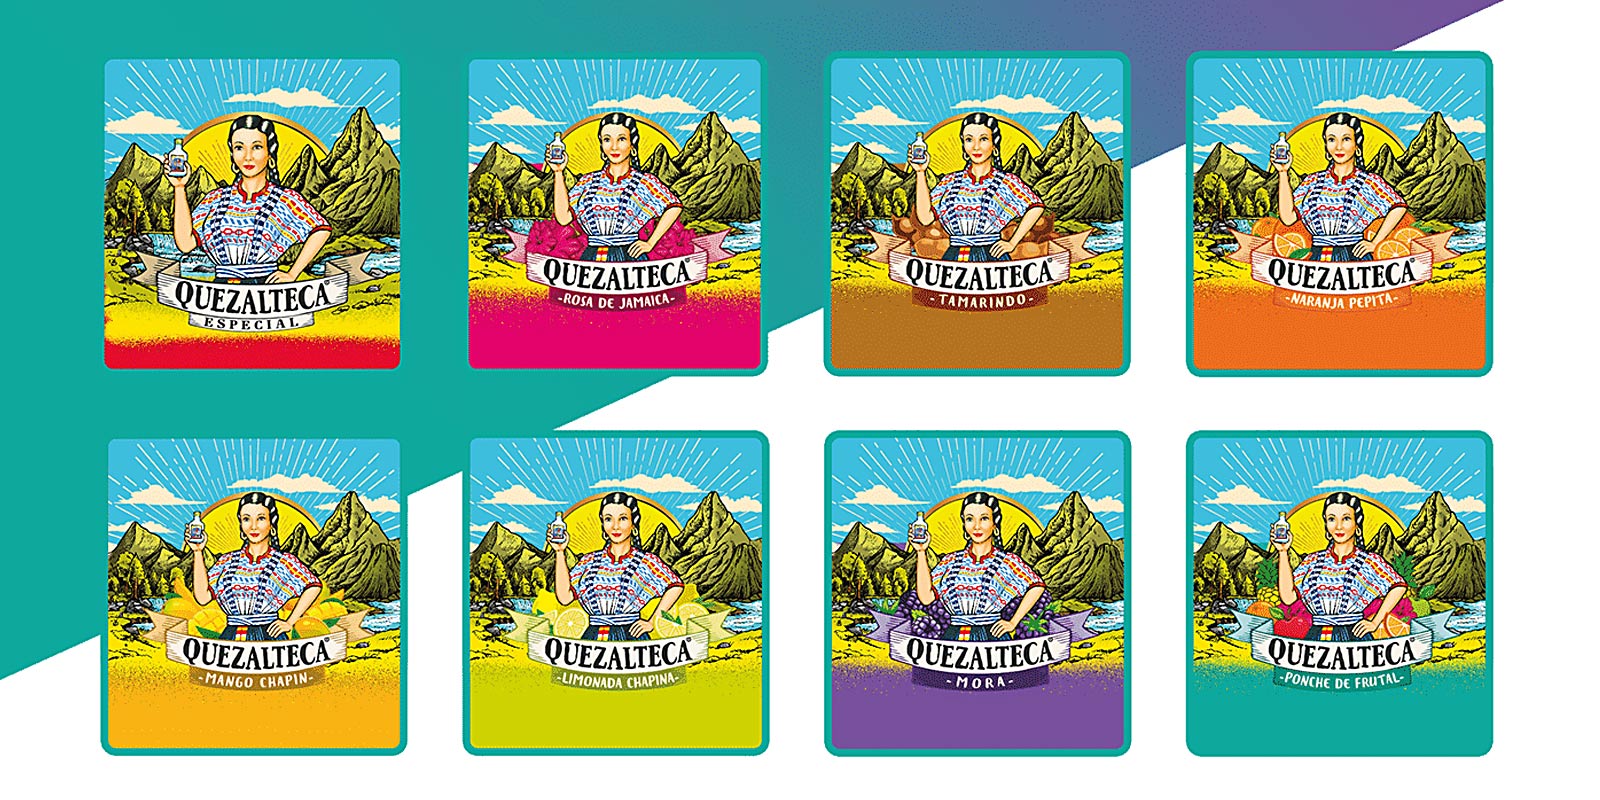 Mosaico de etiquetas para aguardiente saborizada Quezalteca, rediseño por Tridimage.